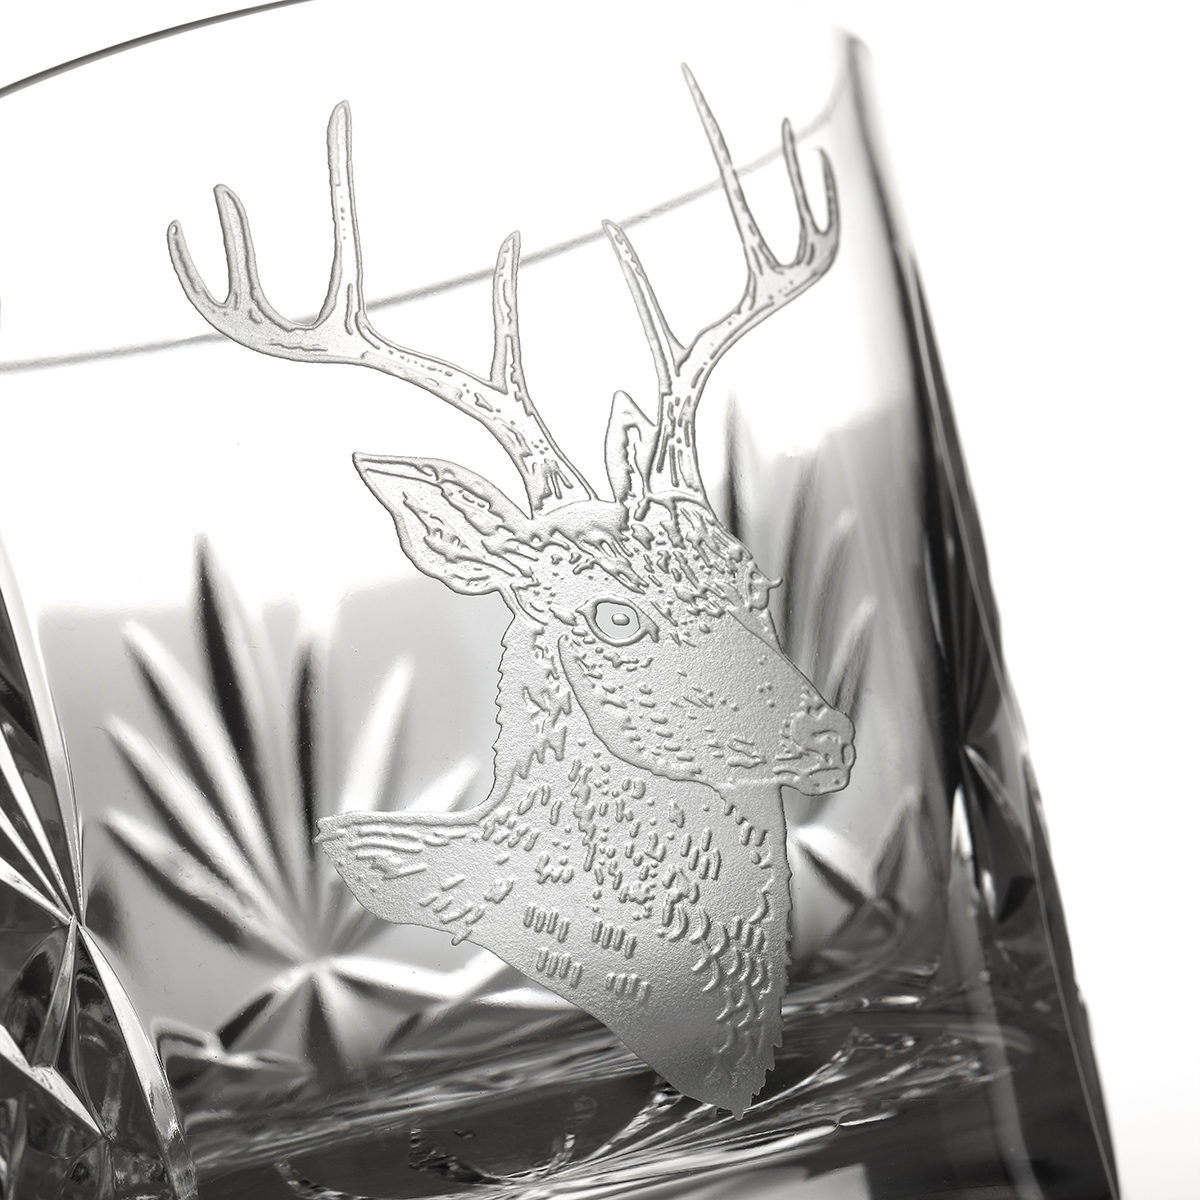 Kintyre Stag Tumbler - Kristall Whiskyglas - Schottischer Highland Hirsch